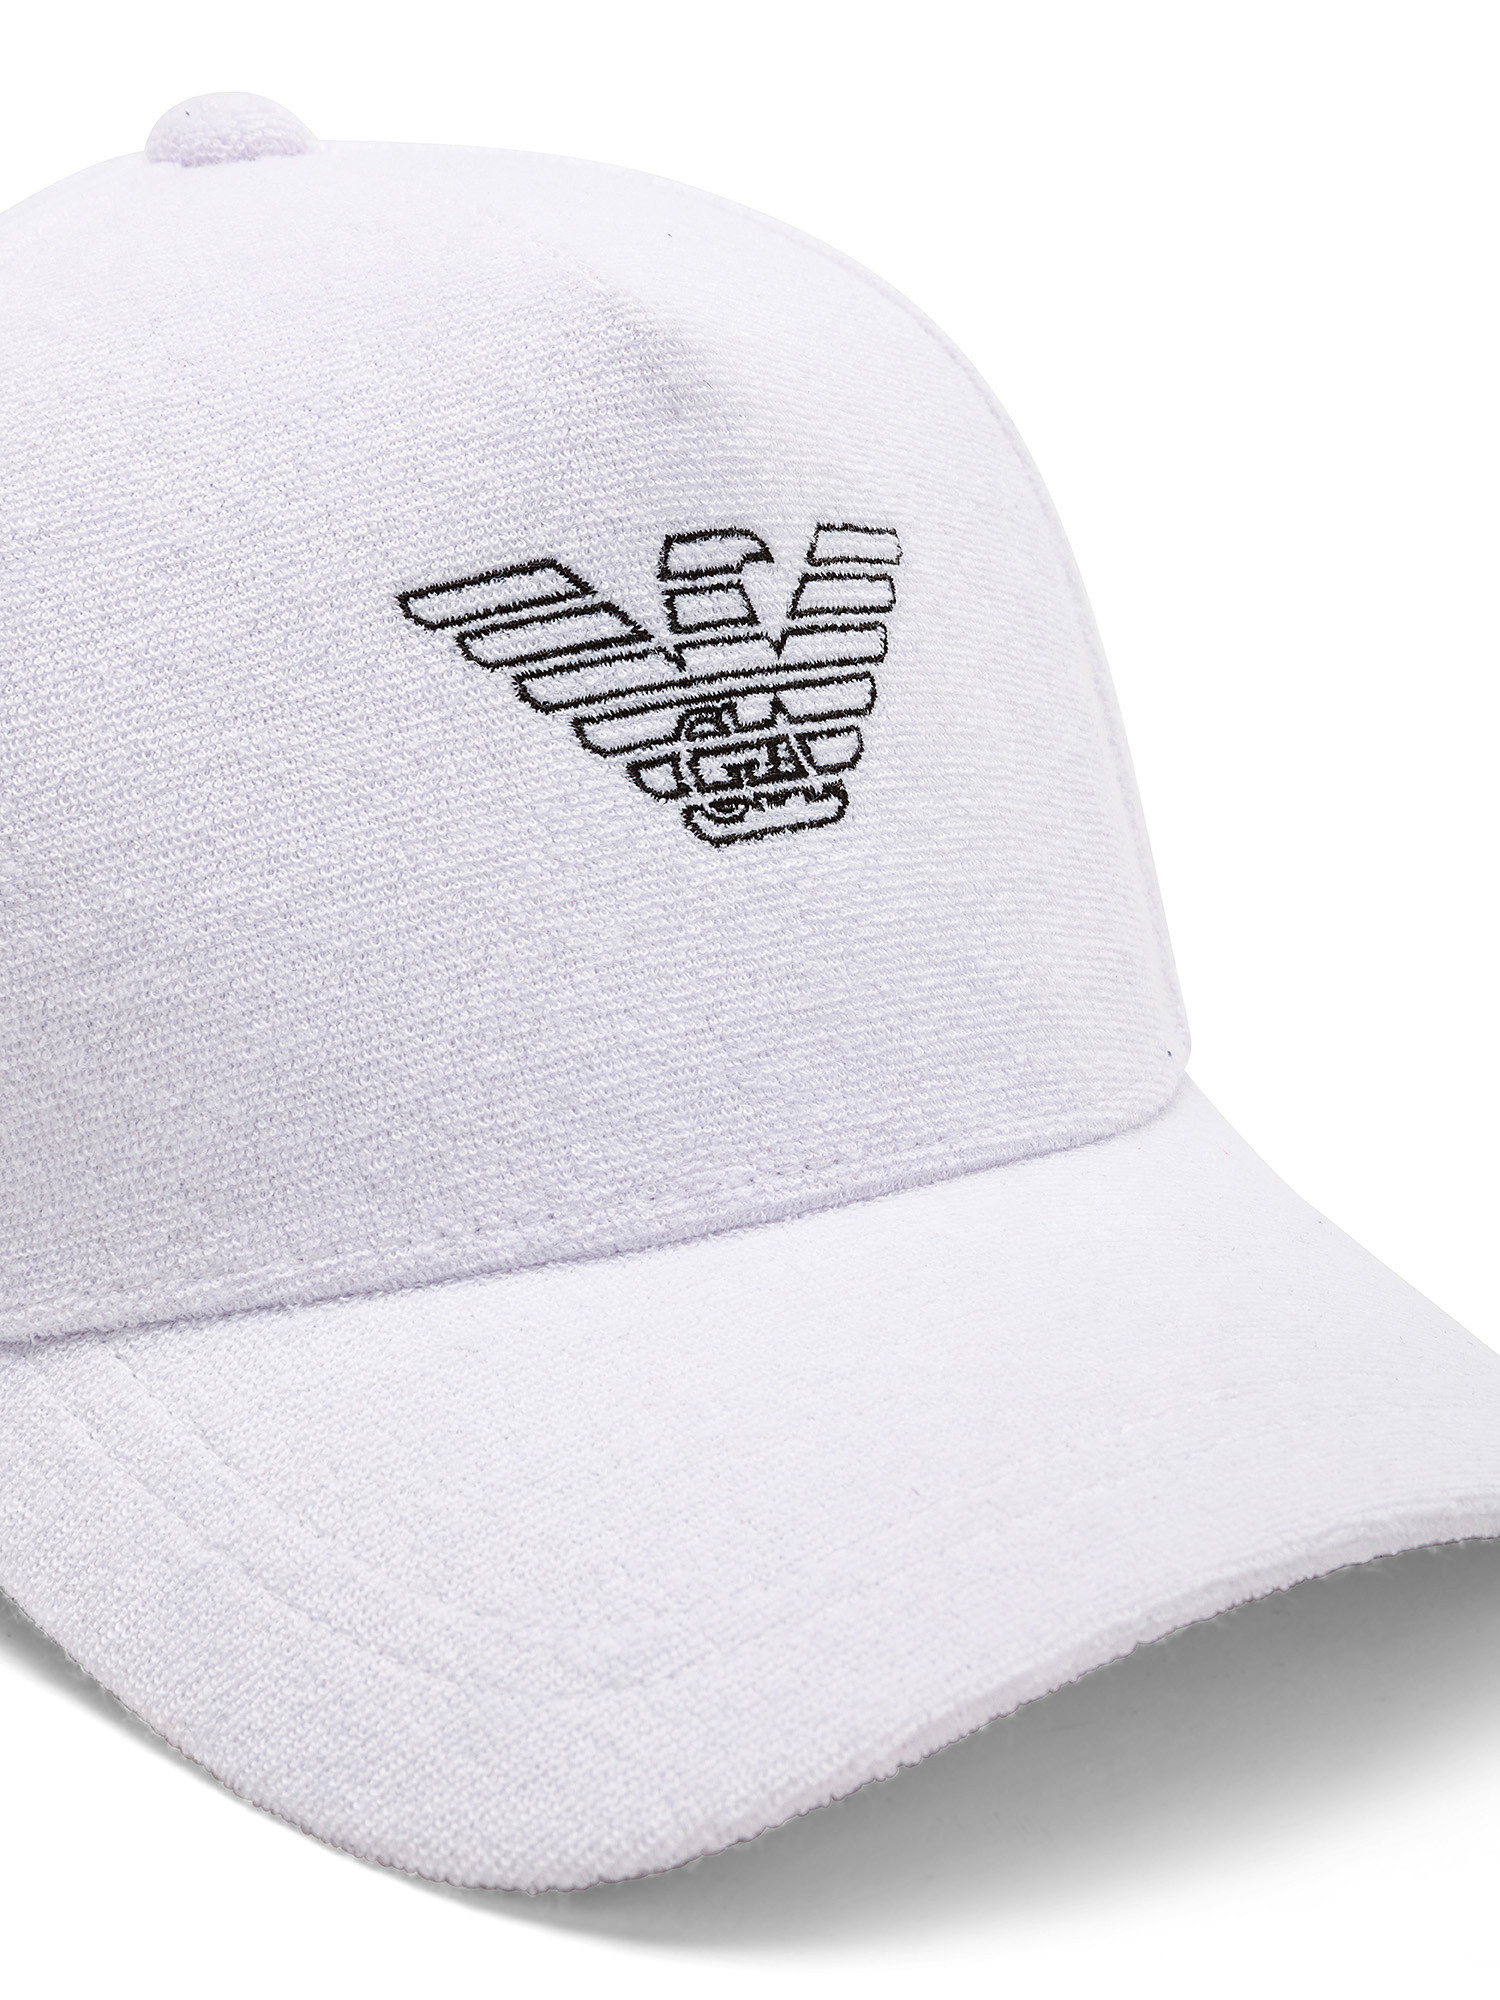 Baseball cap with eagle logo, White, large image number 1